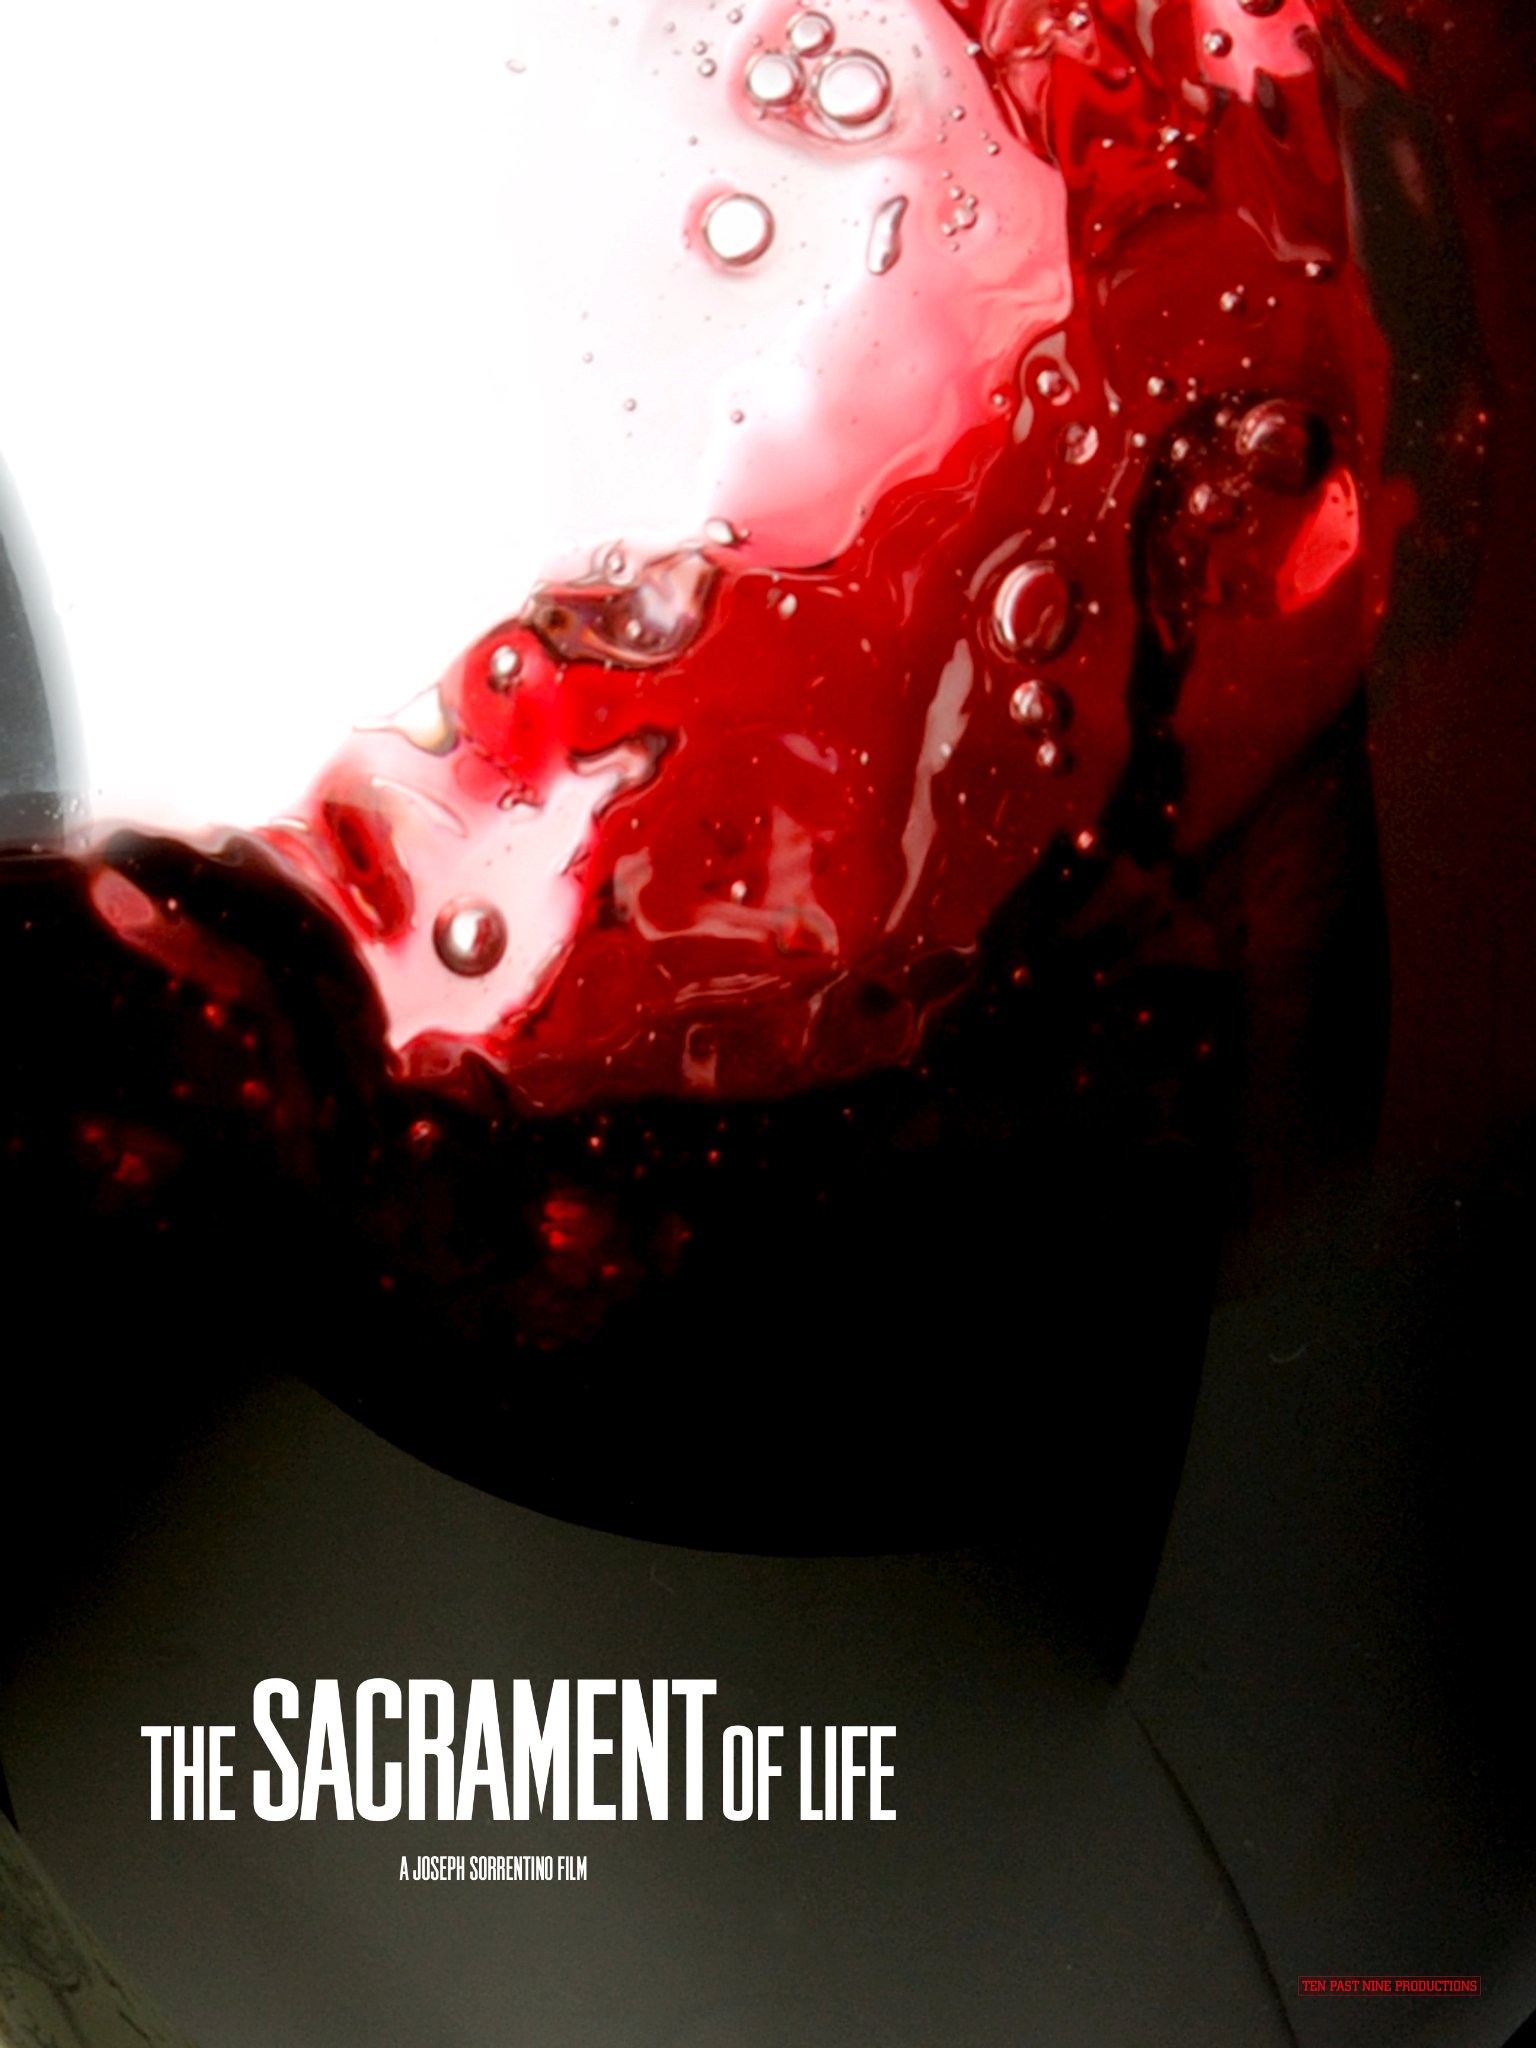 Фото - The Sacrament of Life: 1536x2048 / 230 Кб